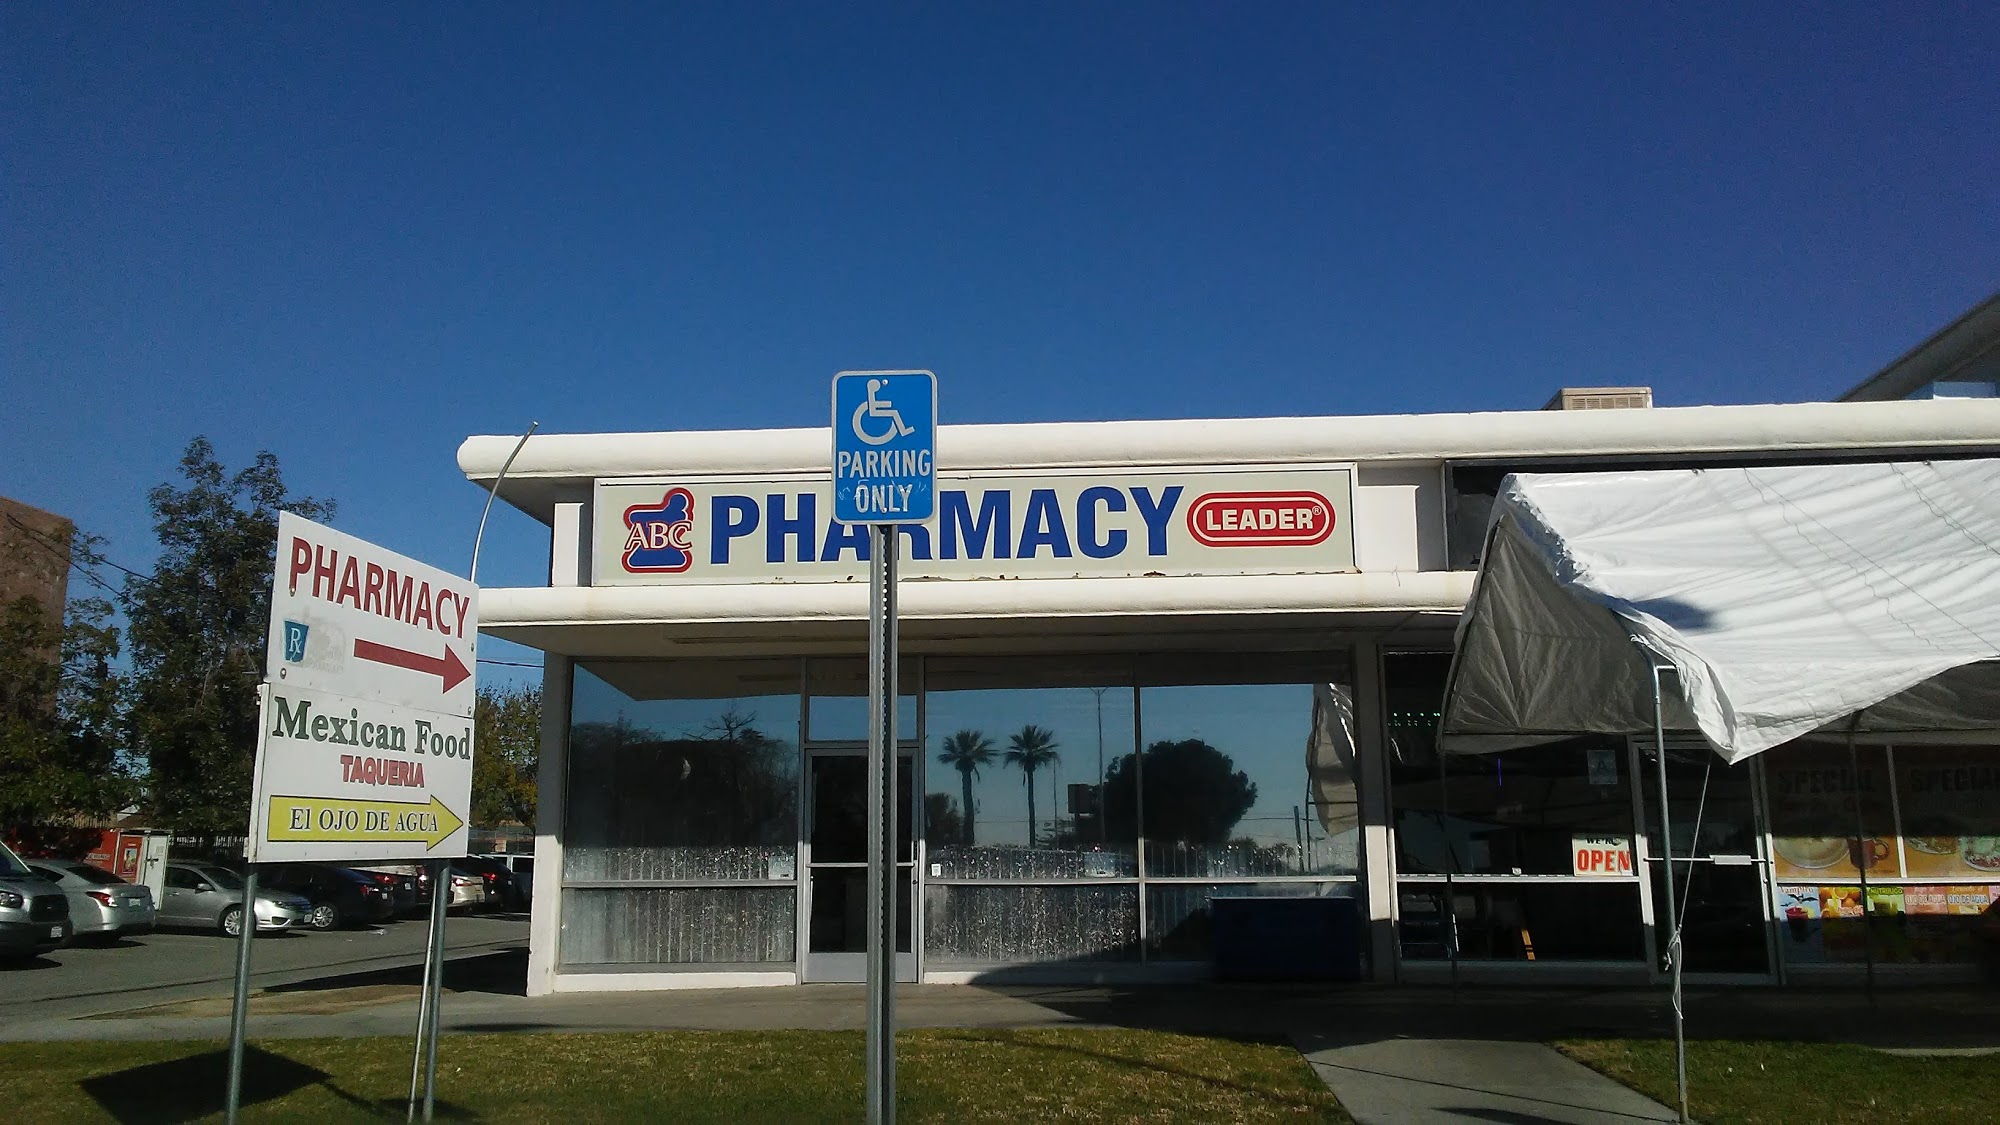 ABC Pharmacy